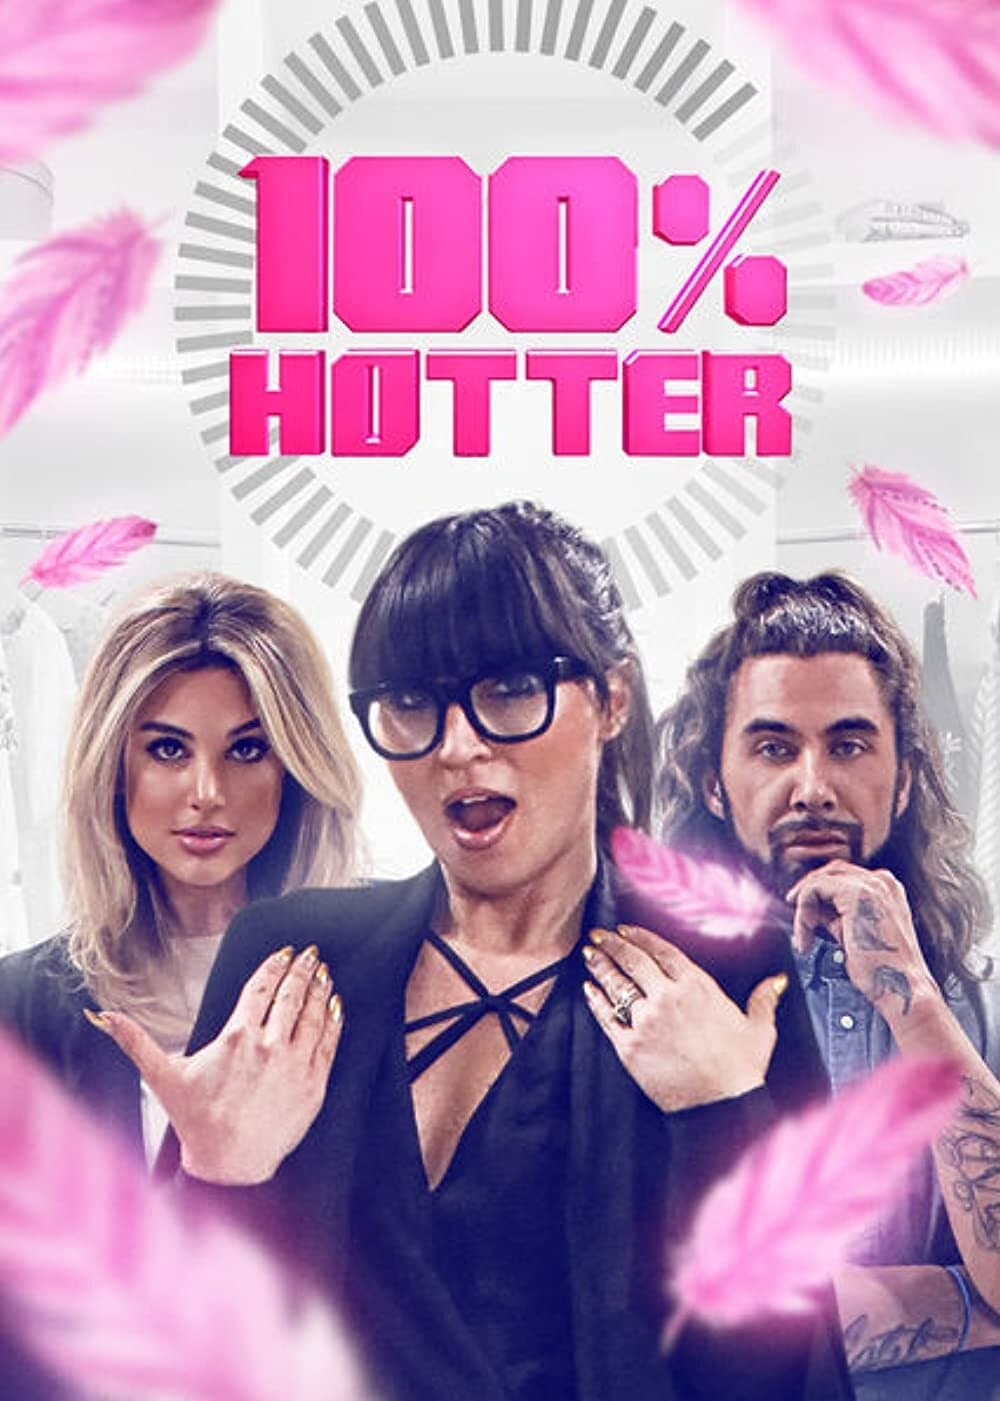 Les saisons de 100% Hotter sont-elles disponibles sur Netflix ou autre ?